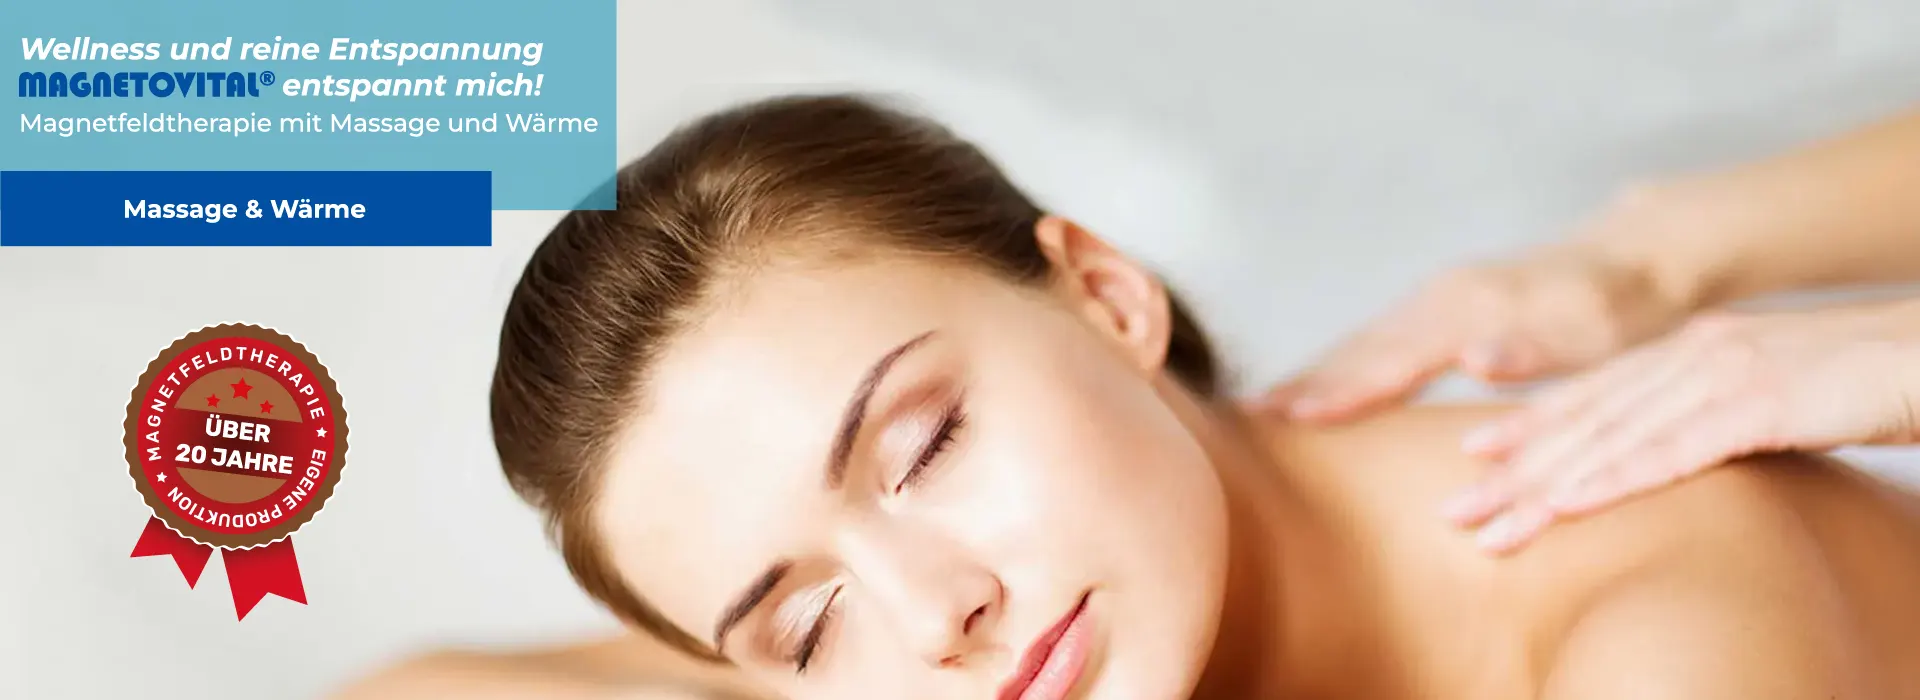 Wellness und reine Entspannung – Magnetfeldtherapie mit Massage und Wärme